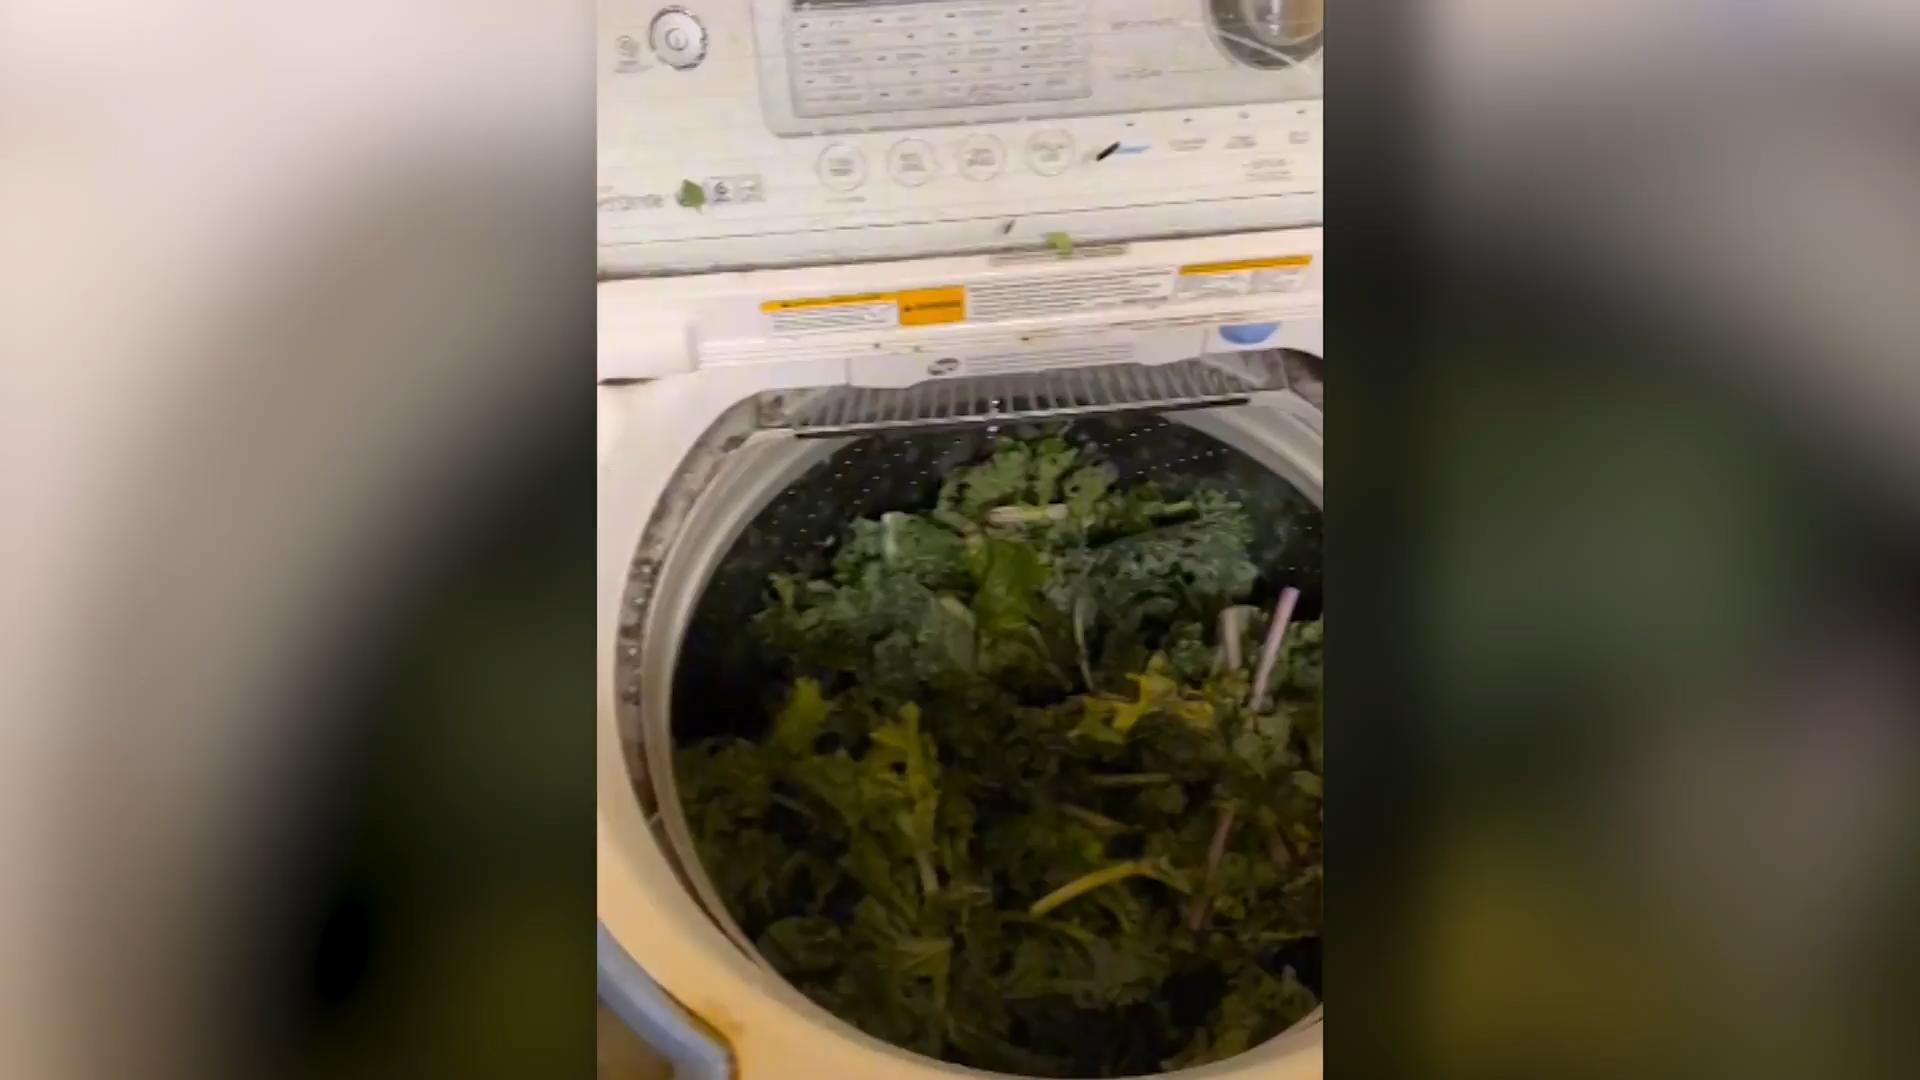 Frau wäscht Gemüse in Waschmaschine - genial oder ekelig? Da haben wir den Salat!